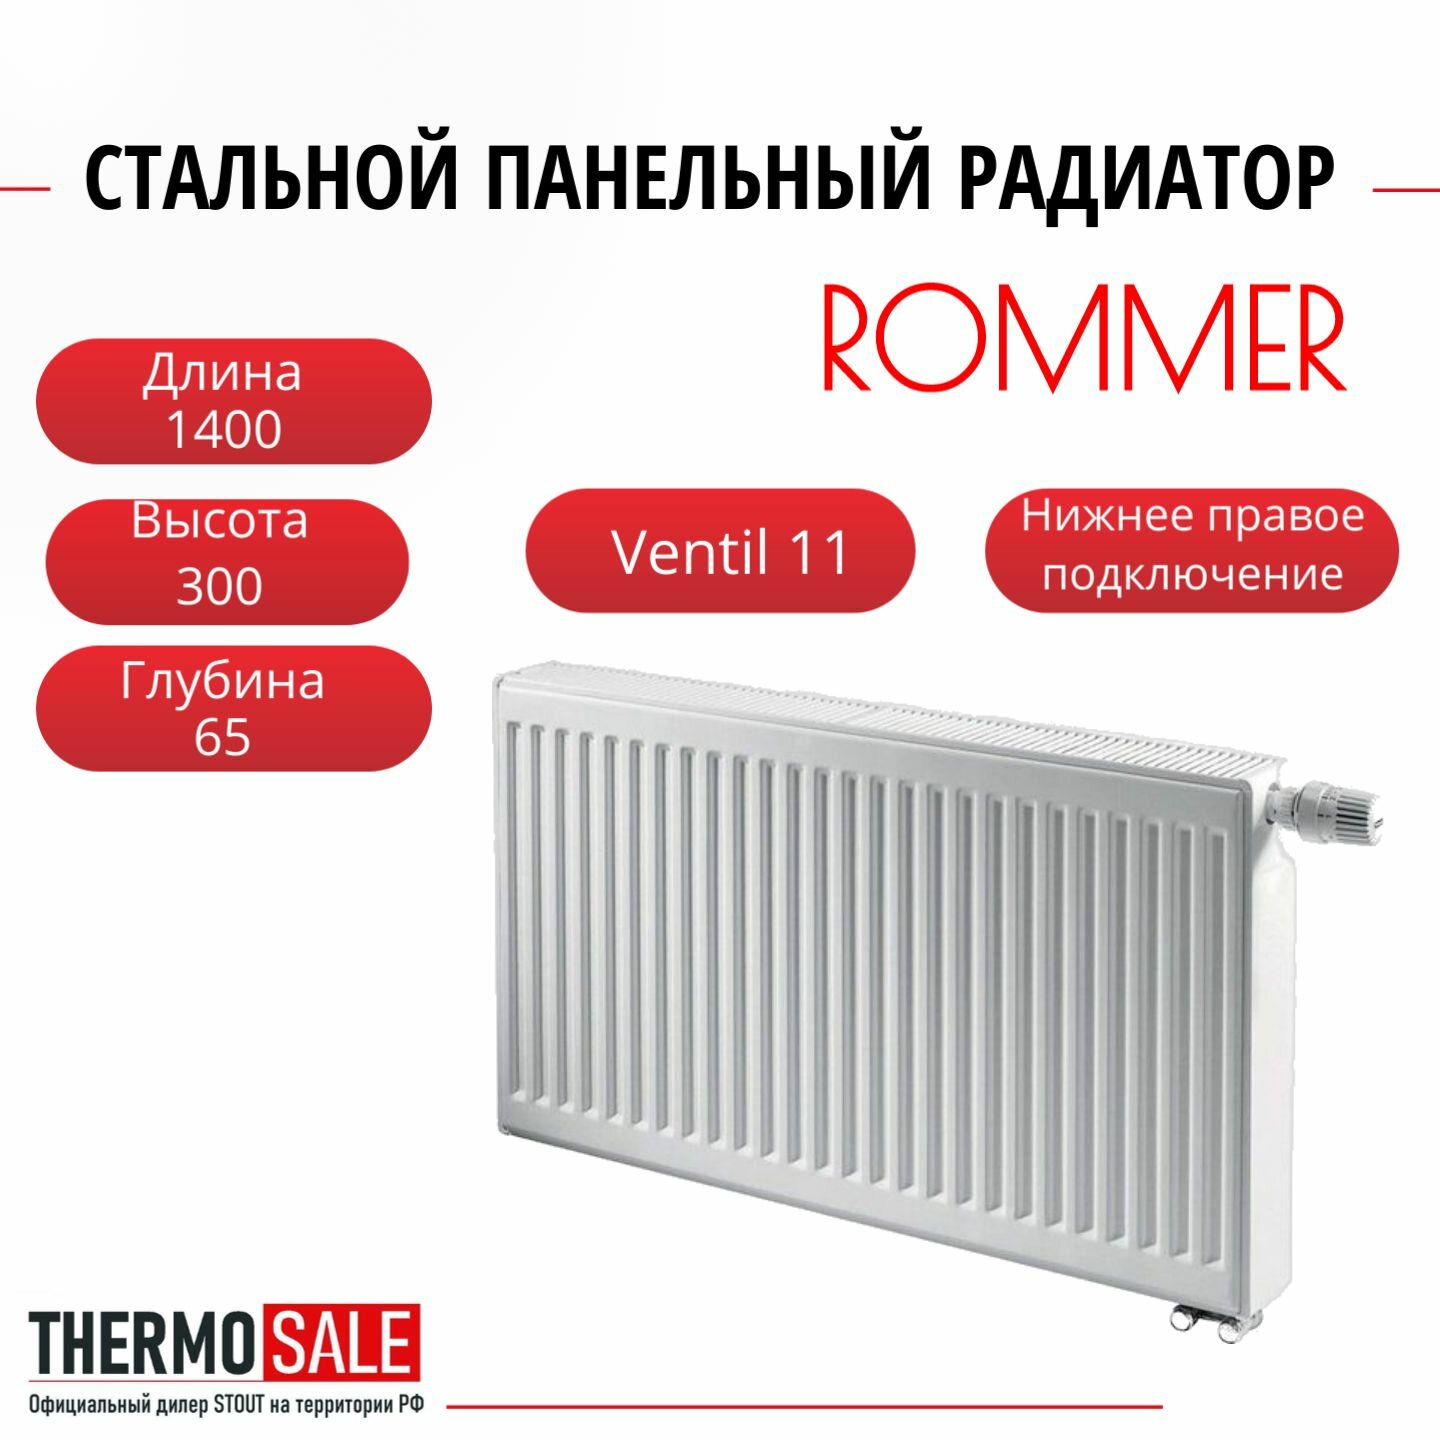 Радиатор стальной панельный ROMMER 300х1400 нижнее правое подключение Ventil 11/300/1400 RRS-2020-113140